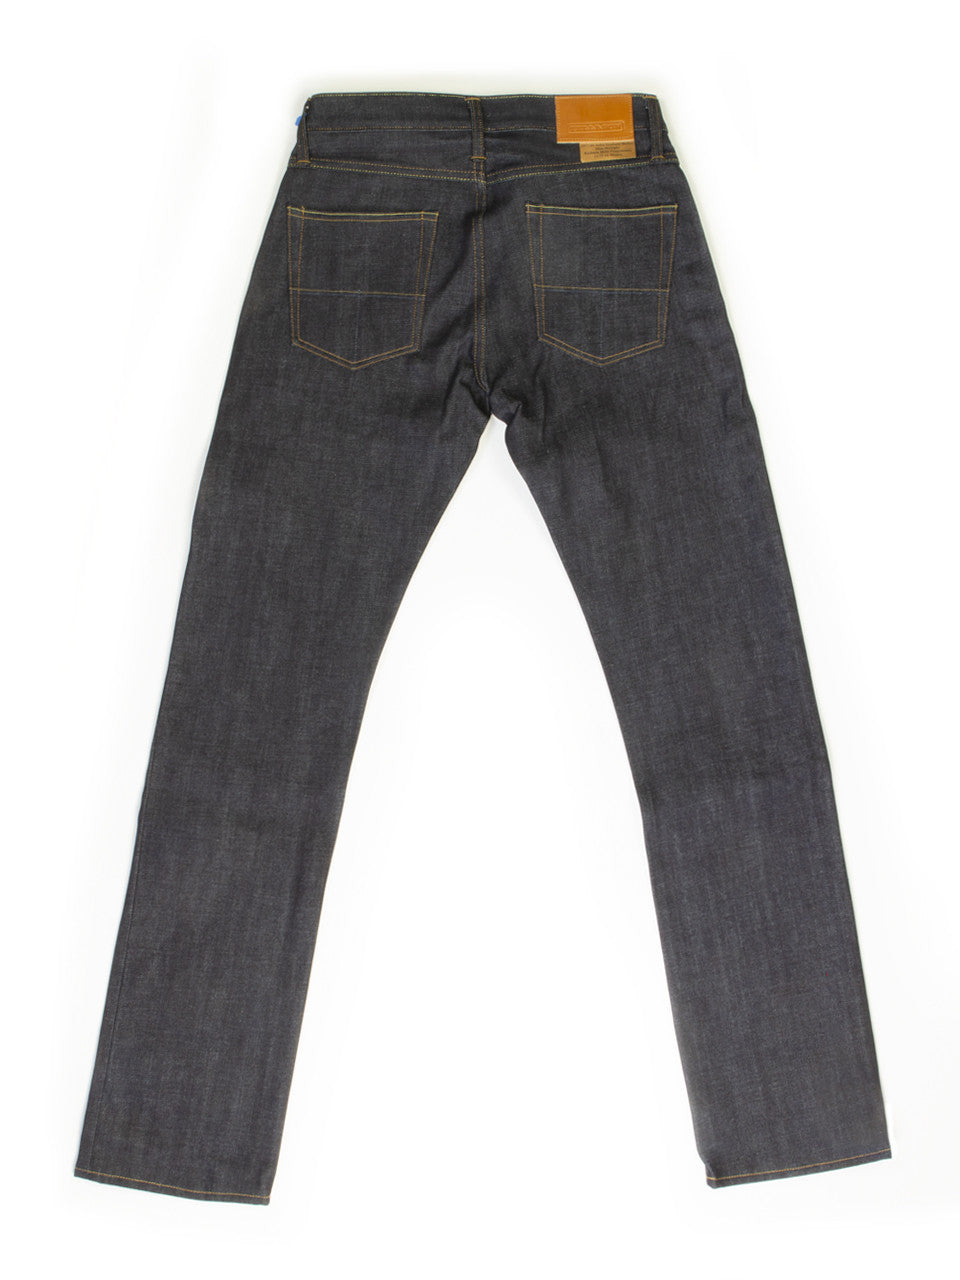 Tellason John Graham Mellor Selvedge Jeans